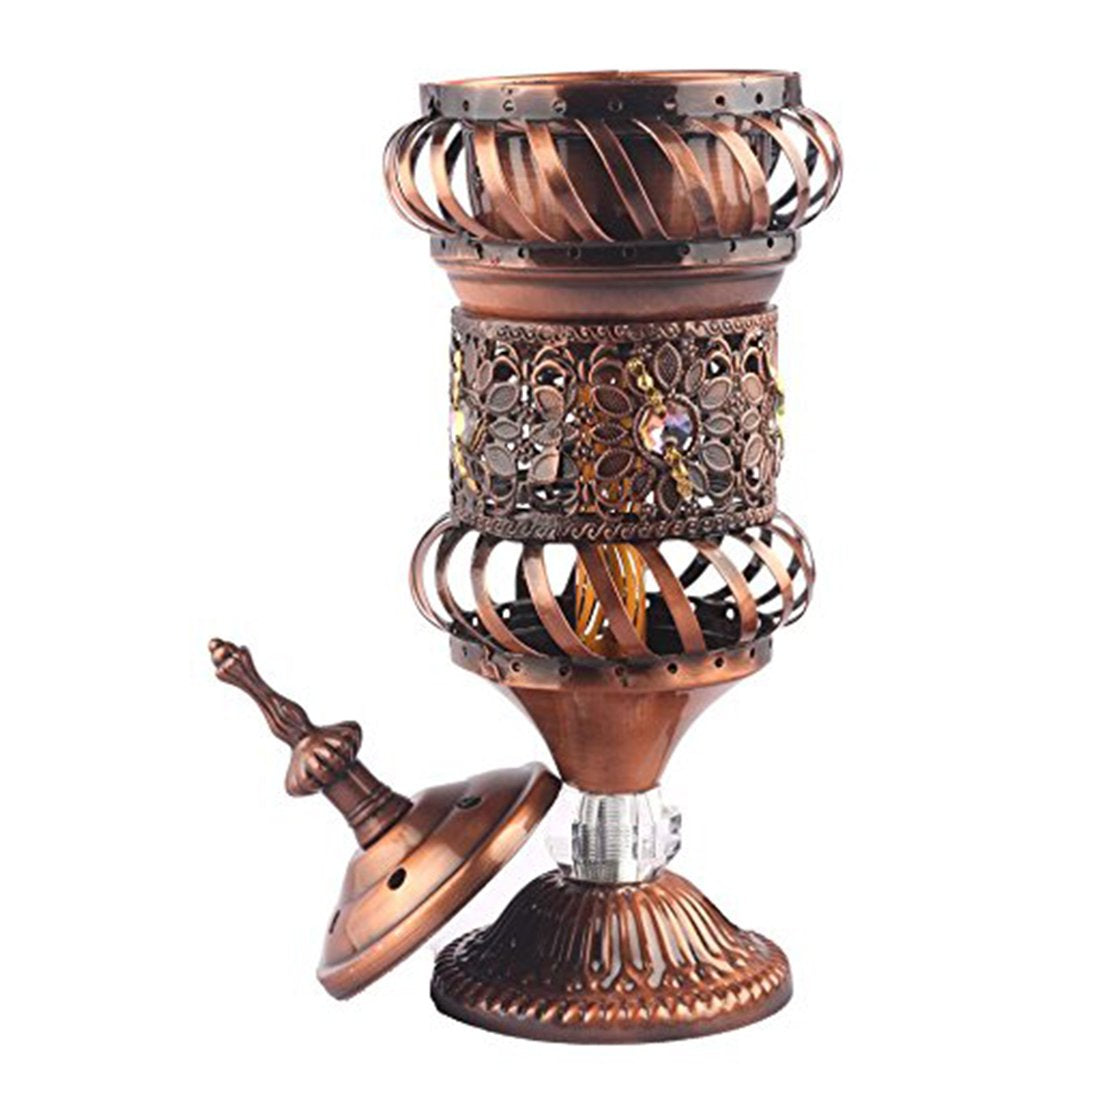 Electrical Bakhoor Burner & 50g Fragrance Paste Iron Incense Holder - Bronze (Oud/BAKHOOR/LOBAAN)